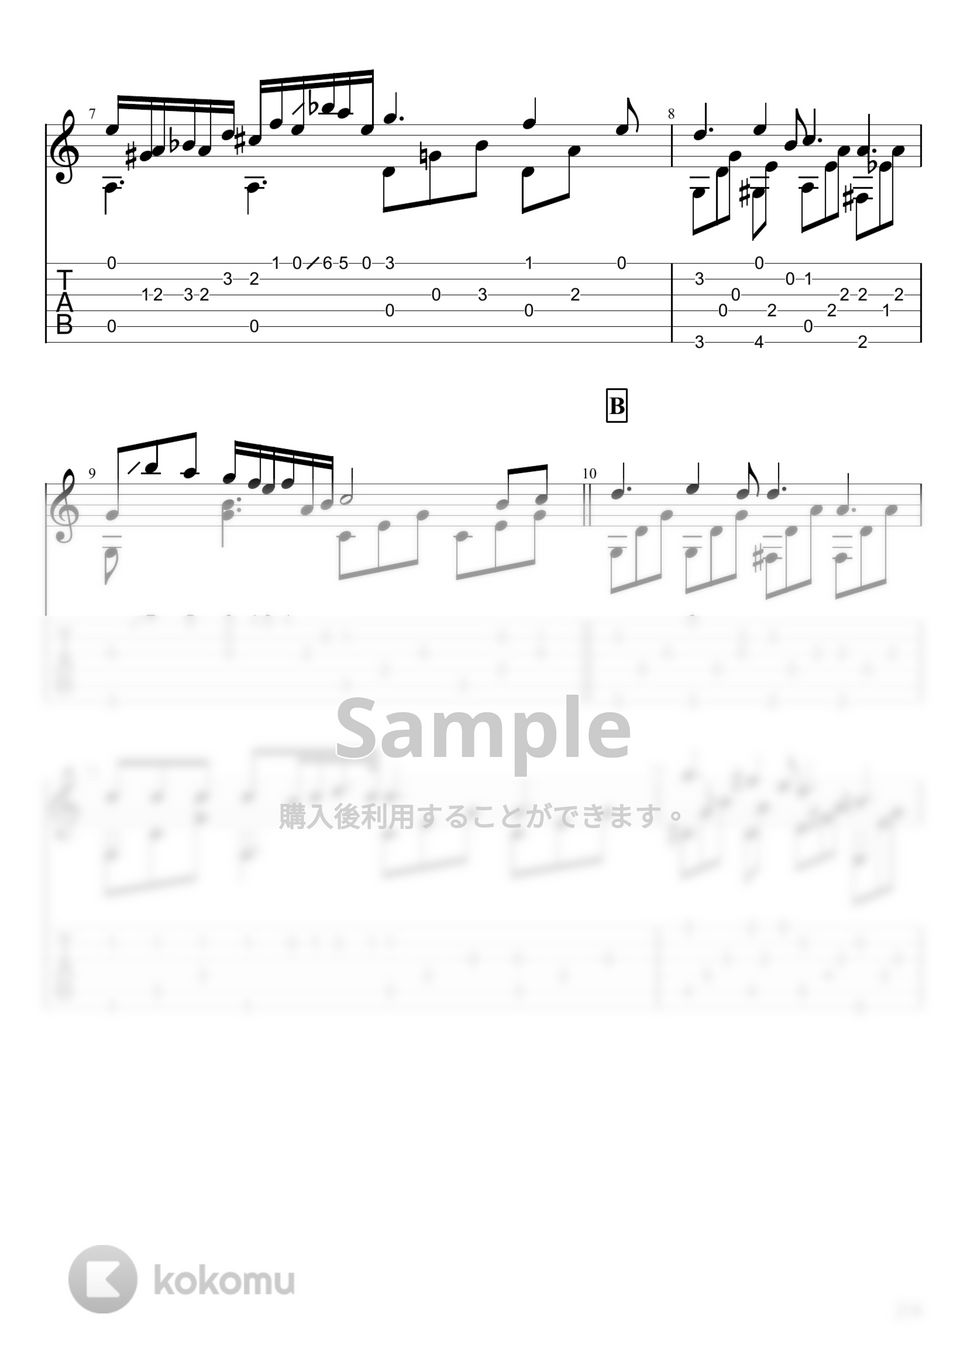 Chopin - Nocturne Op 9 No 2(夜想曲第2番) (ソロギター) by u3danchou